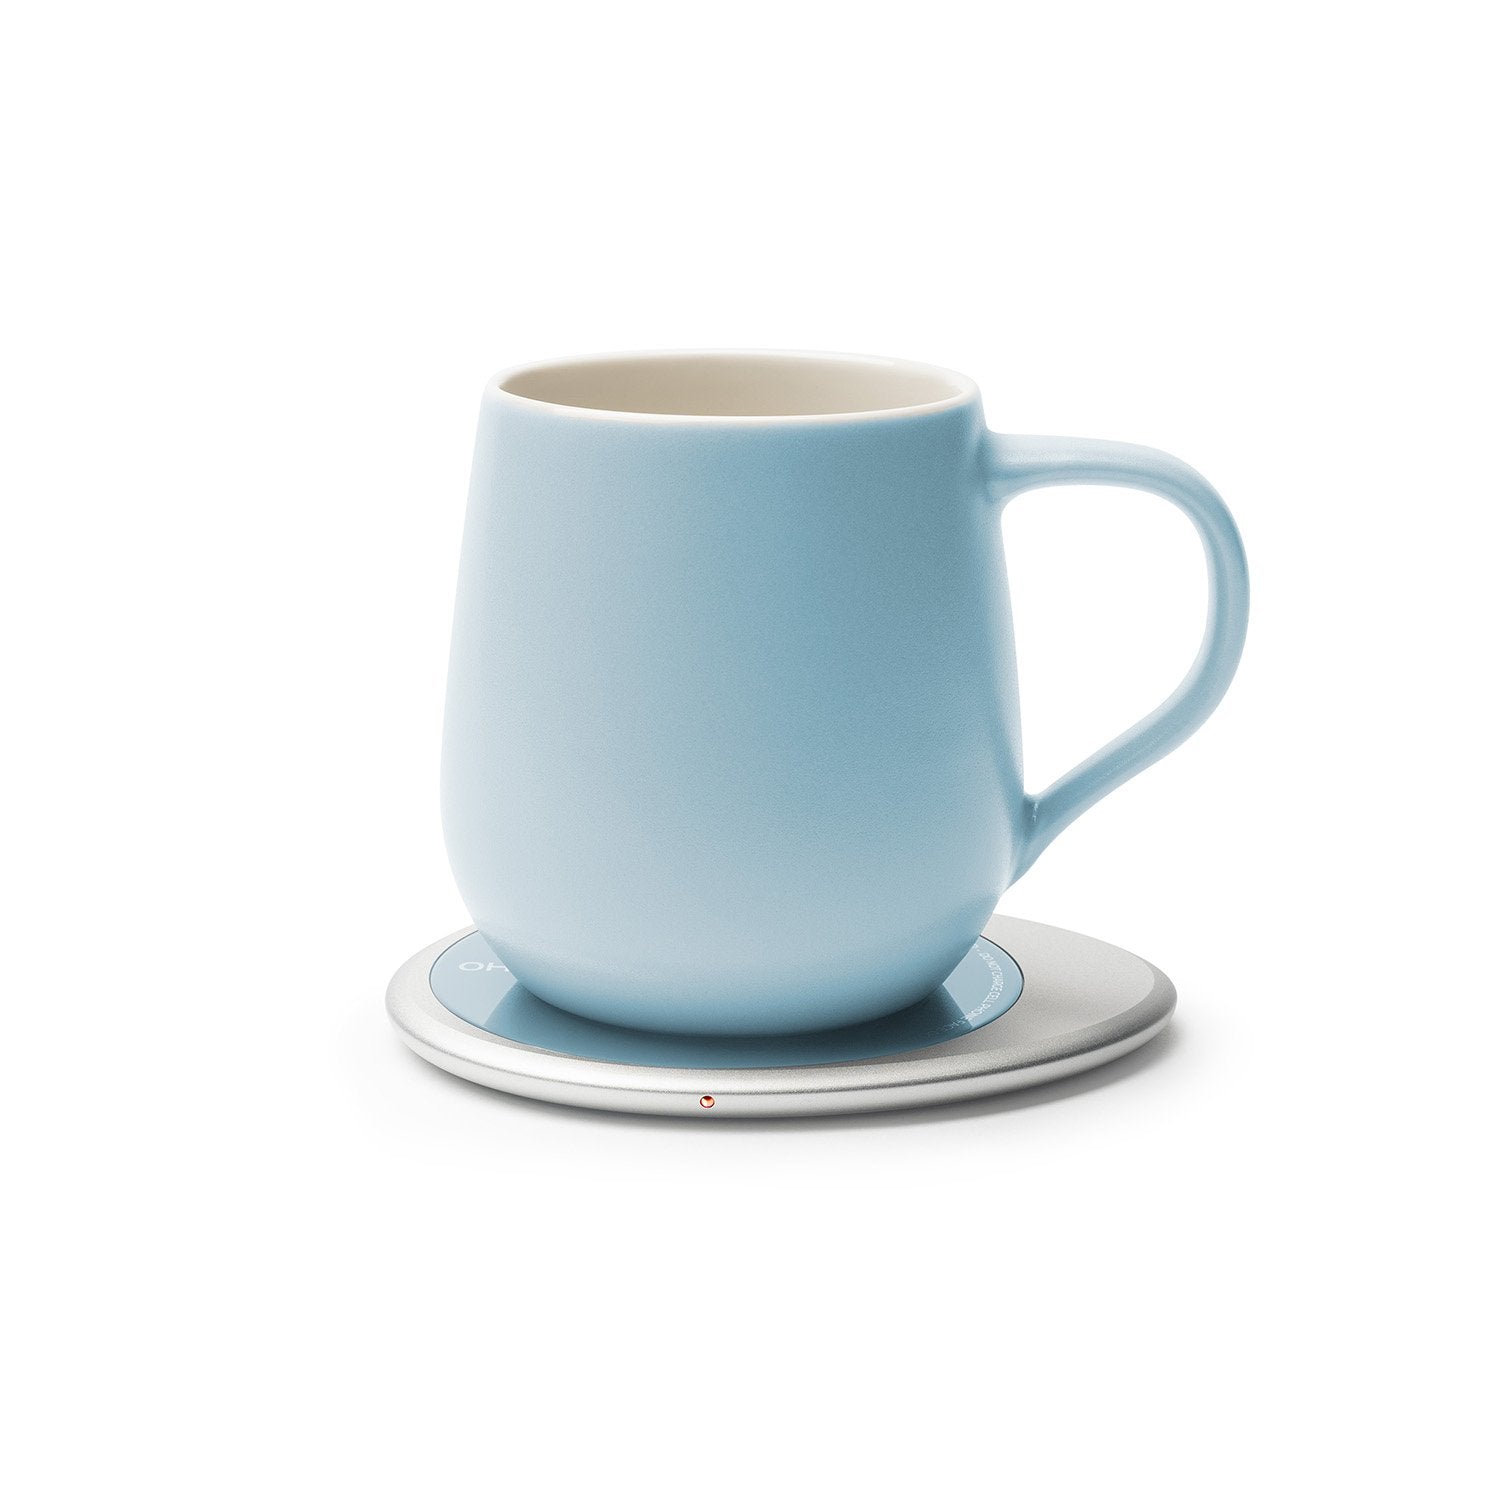 Light blue mug on heating pad